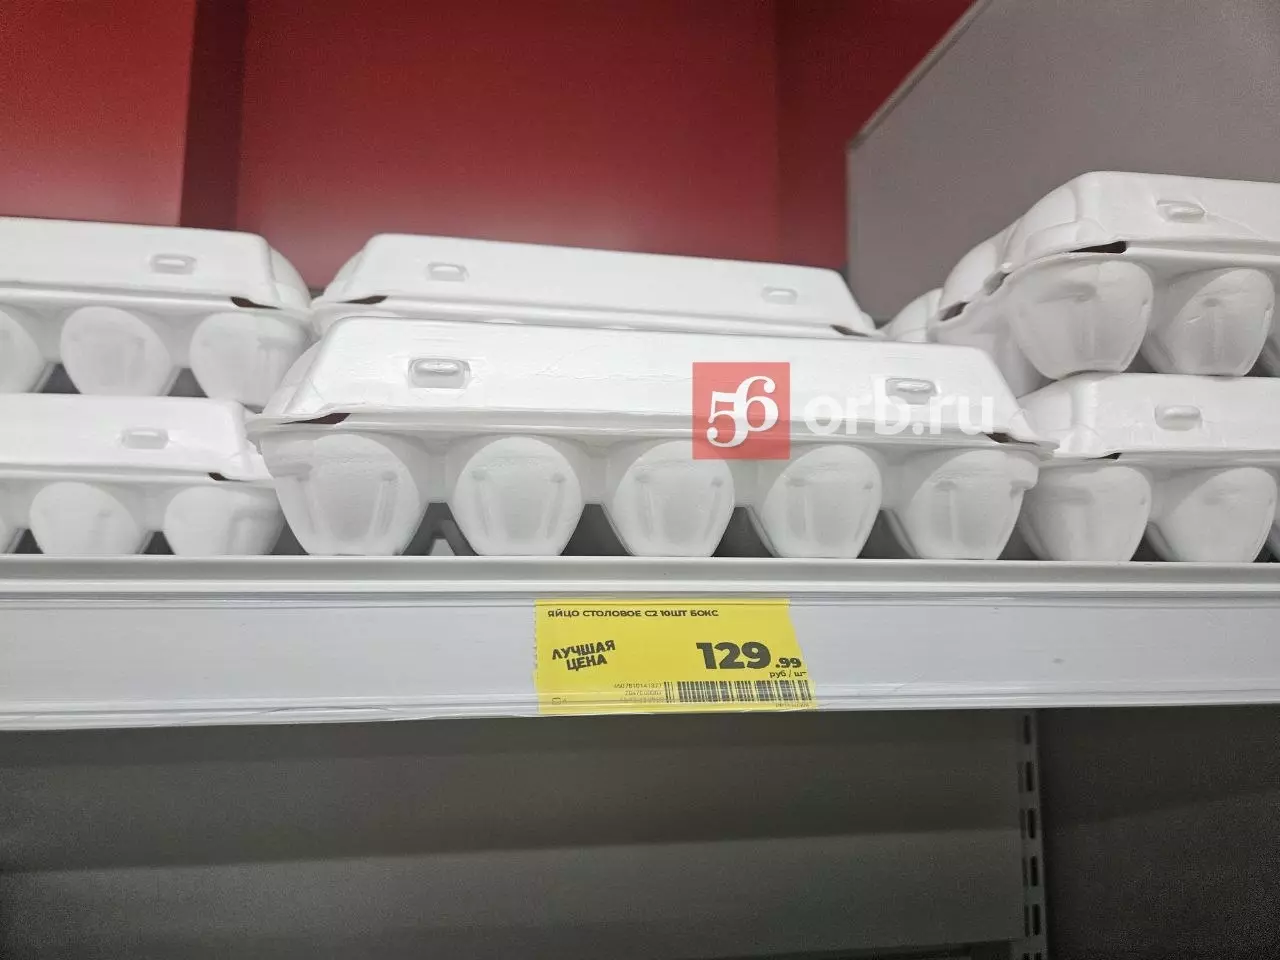 Цена яиц в Магните 